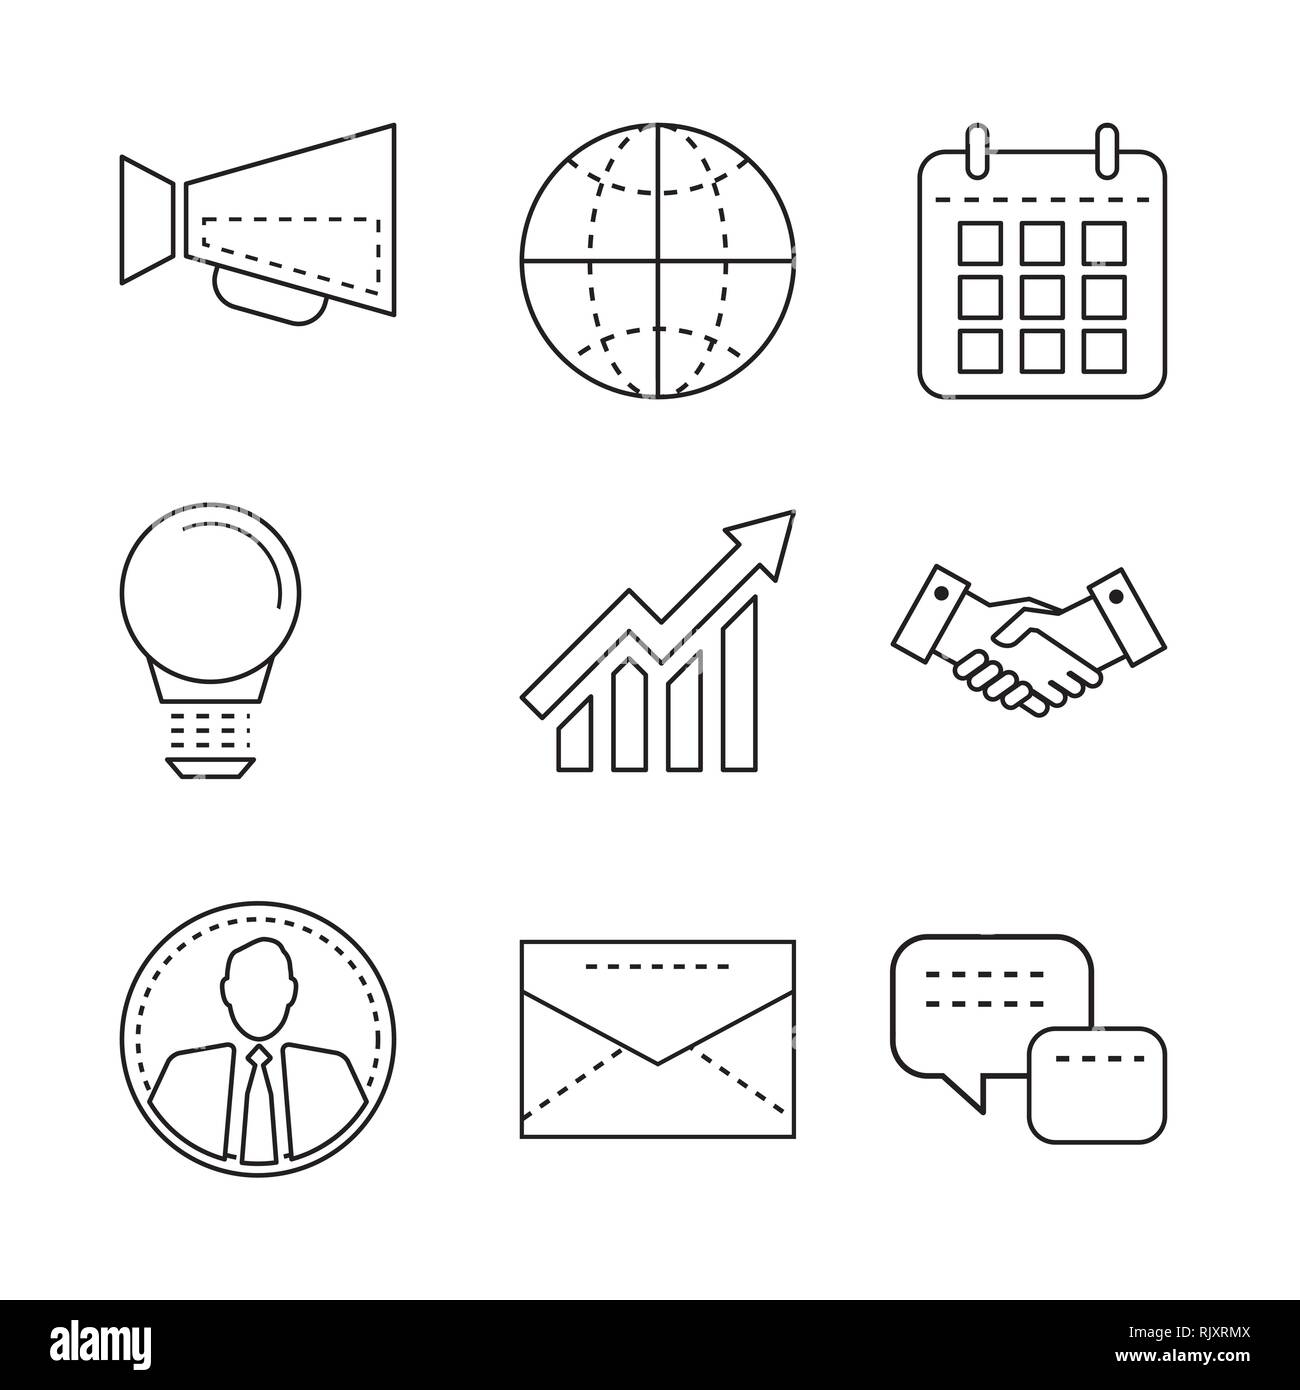 Business Icons mit thin line Elemente für Mobile, Web Apps, Infografik und Design. Stock Vektor